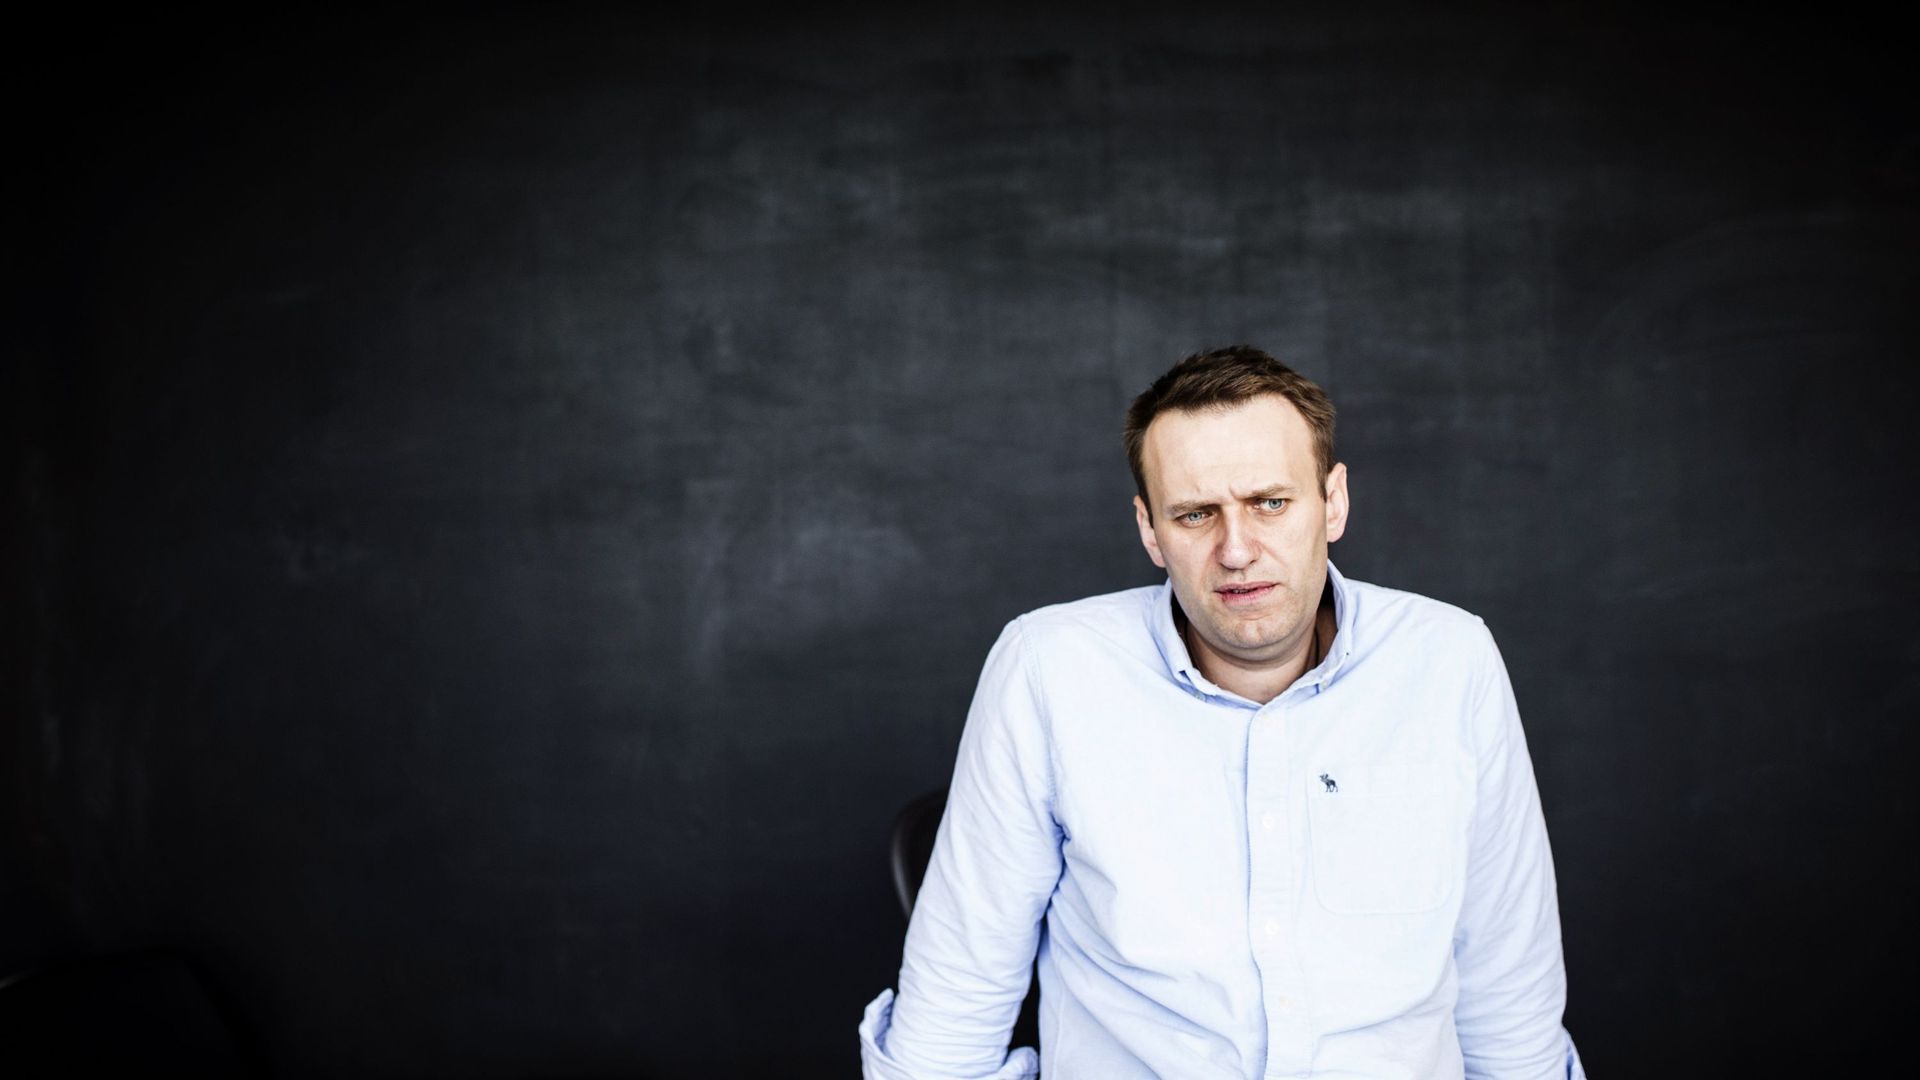 Empoisonnement présumé Navalny: les Etats-Unis appellent Moscou à une "enquête immédiate" (ambassade)